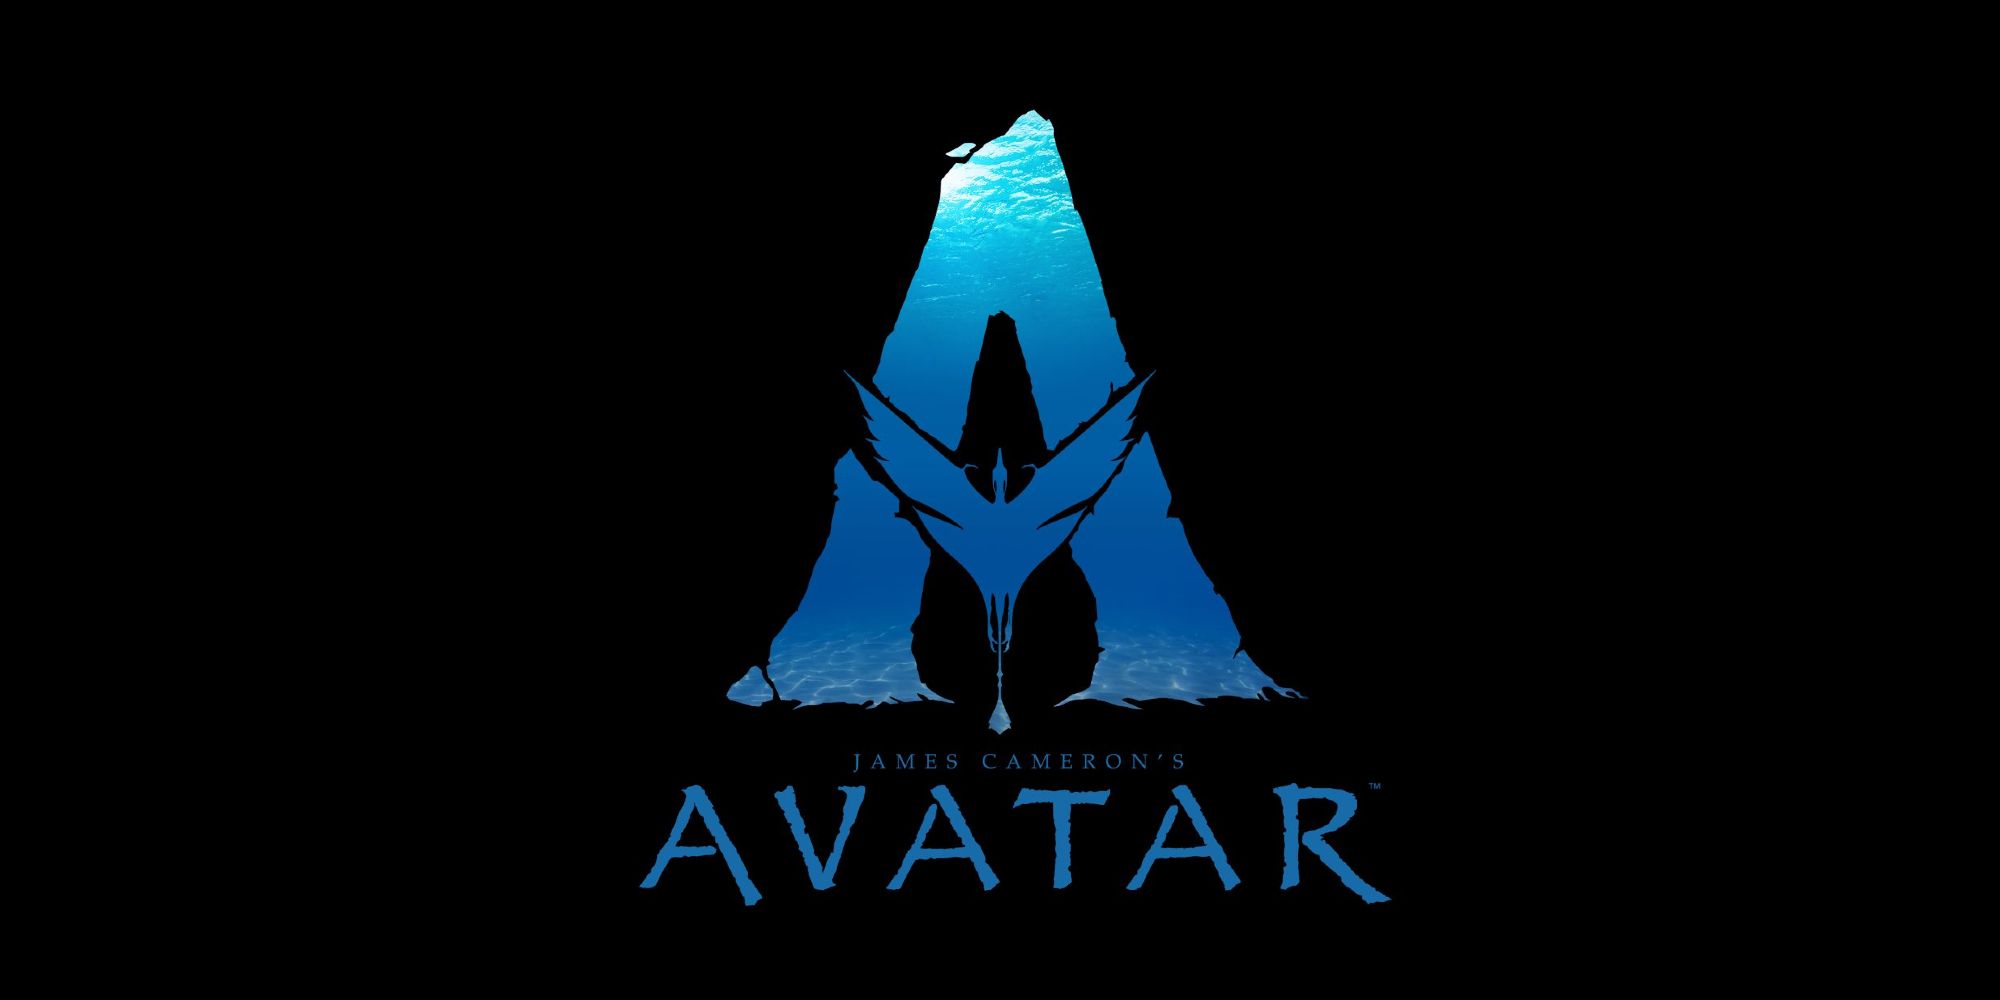 Avatar The Way of Water mở ra thế giới hấp dẫn kỳ vĩ của James Cameron